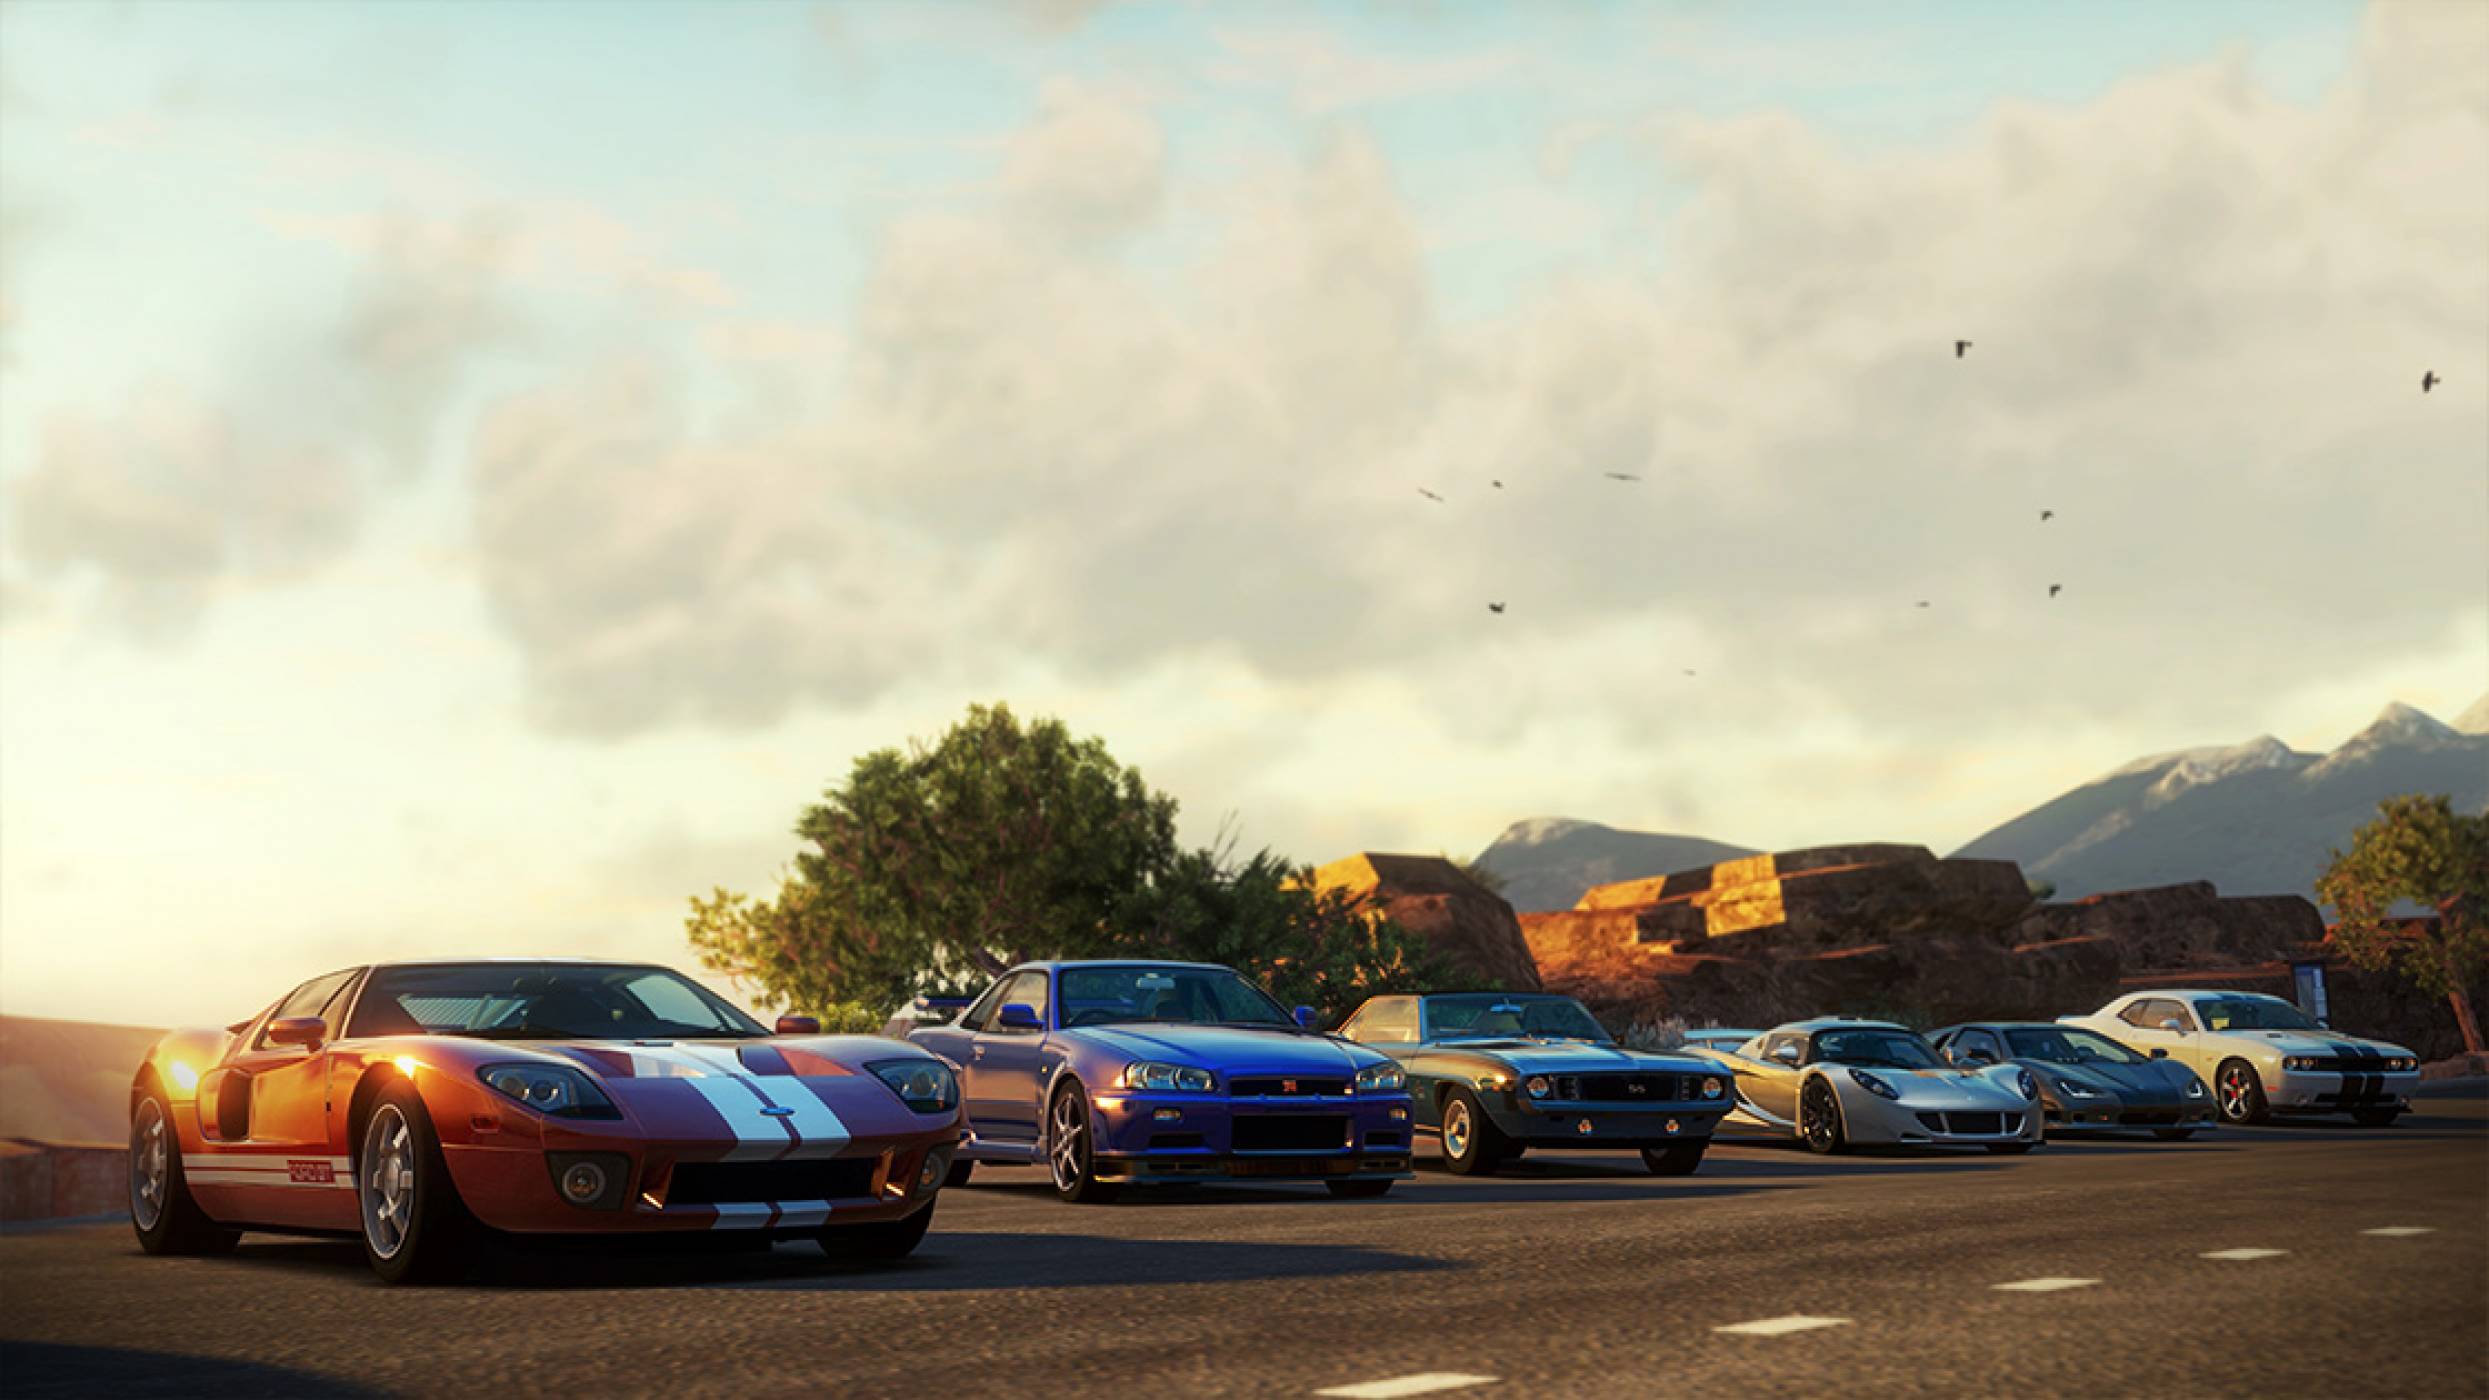 Създателите на Forza Horizon обещаха ролева игра с отворен свят